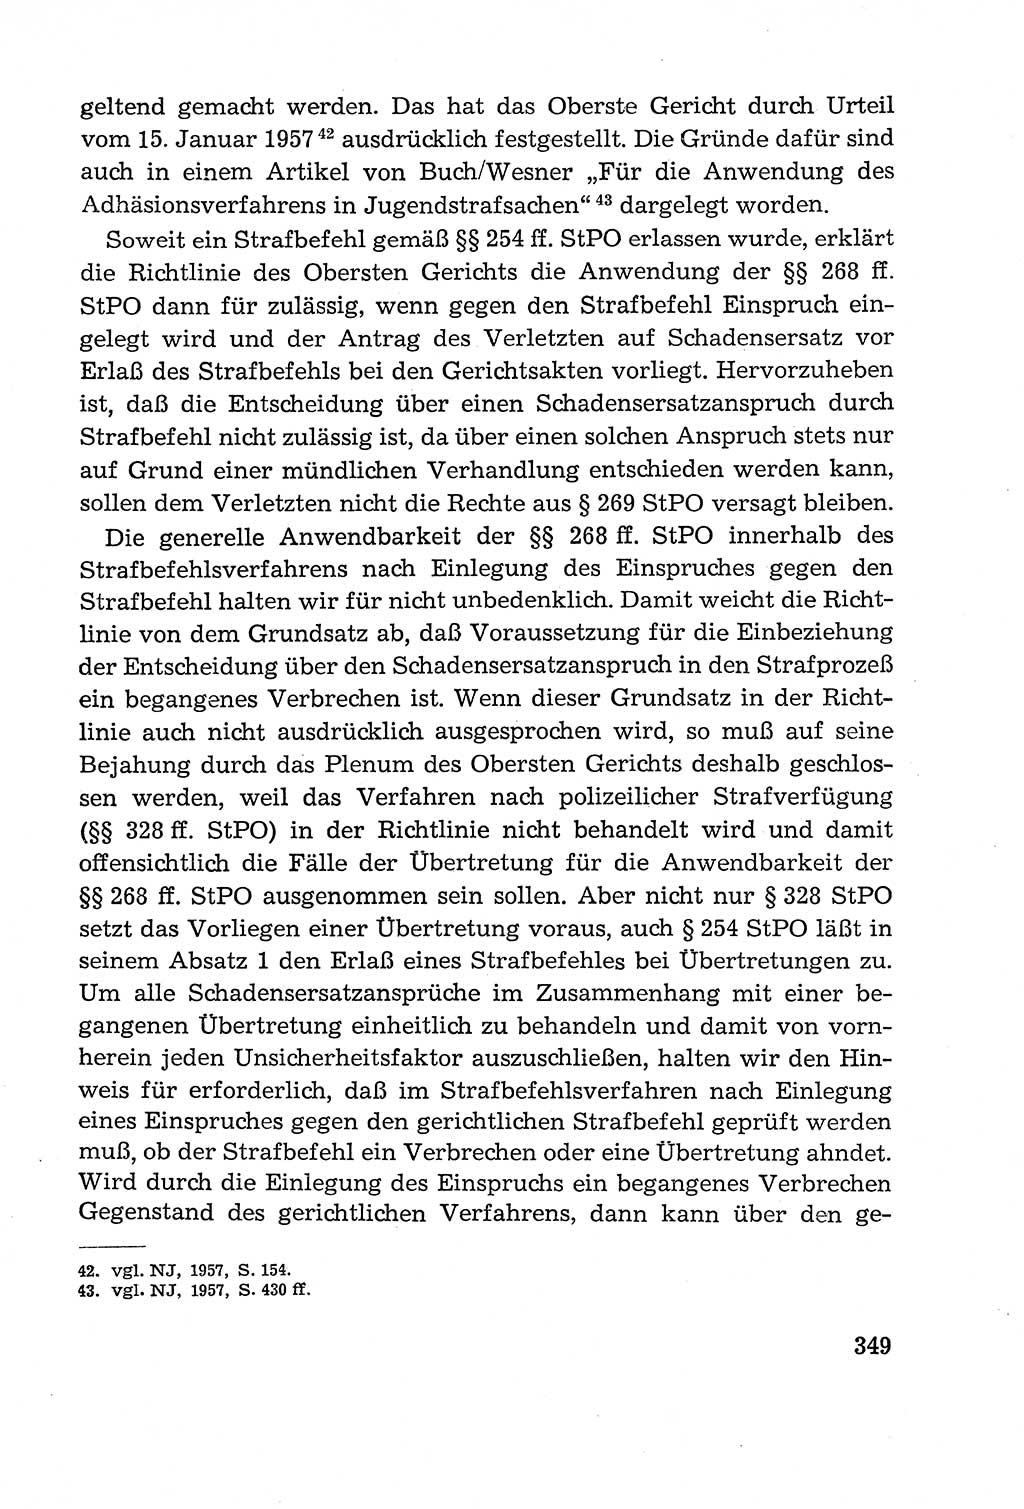 Leitfaden des Strafprozeßrechts der Deutschen Demokratischen Republik (DDR) 1959, Seite 349 (LF StPR DDR 1959, S. 349)